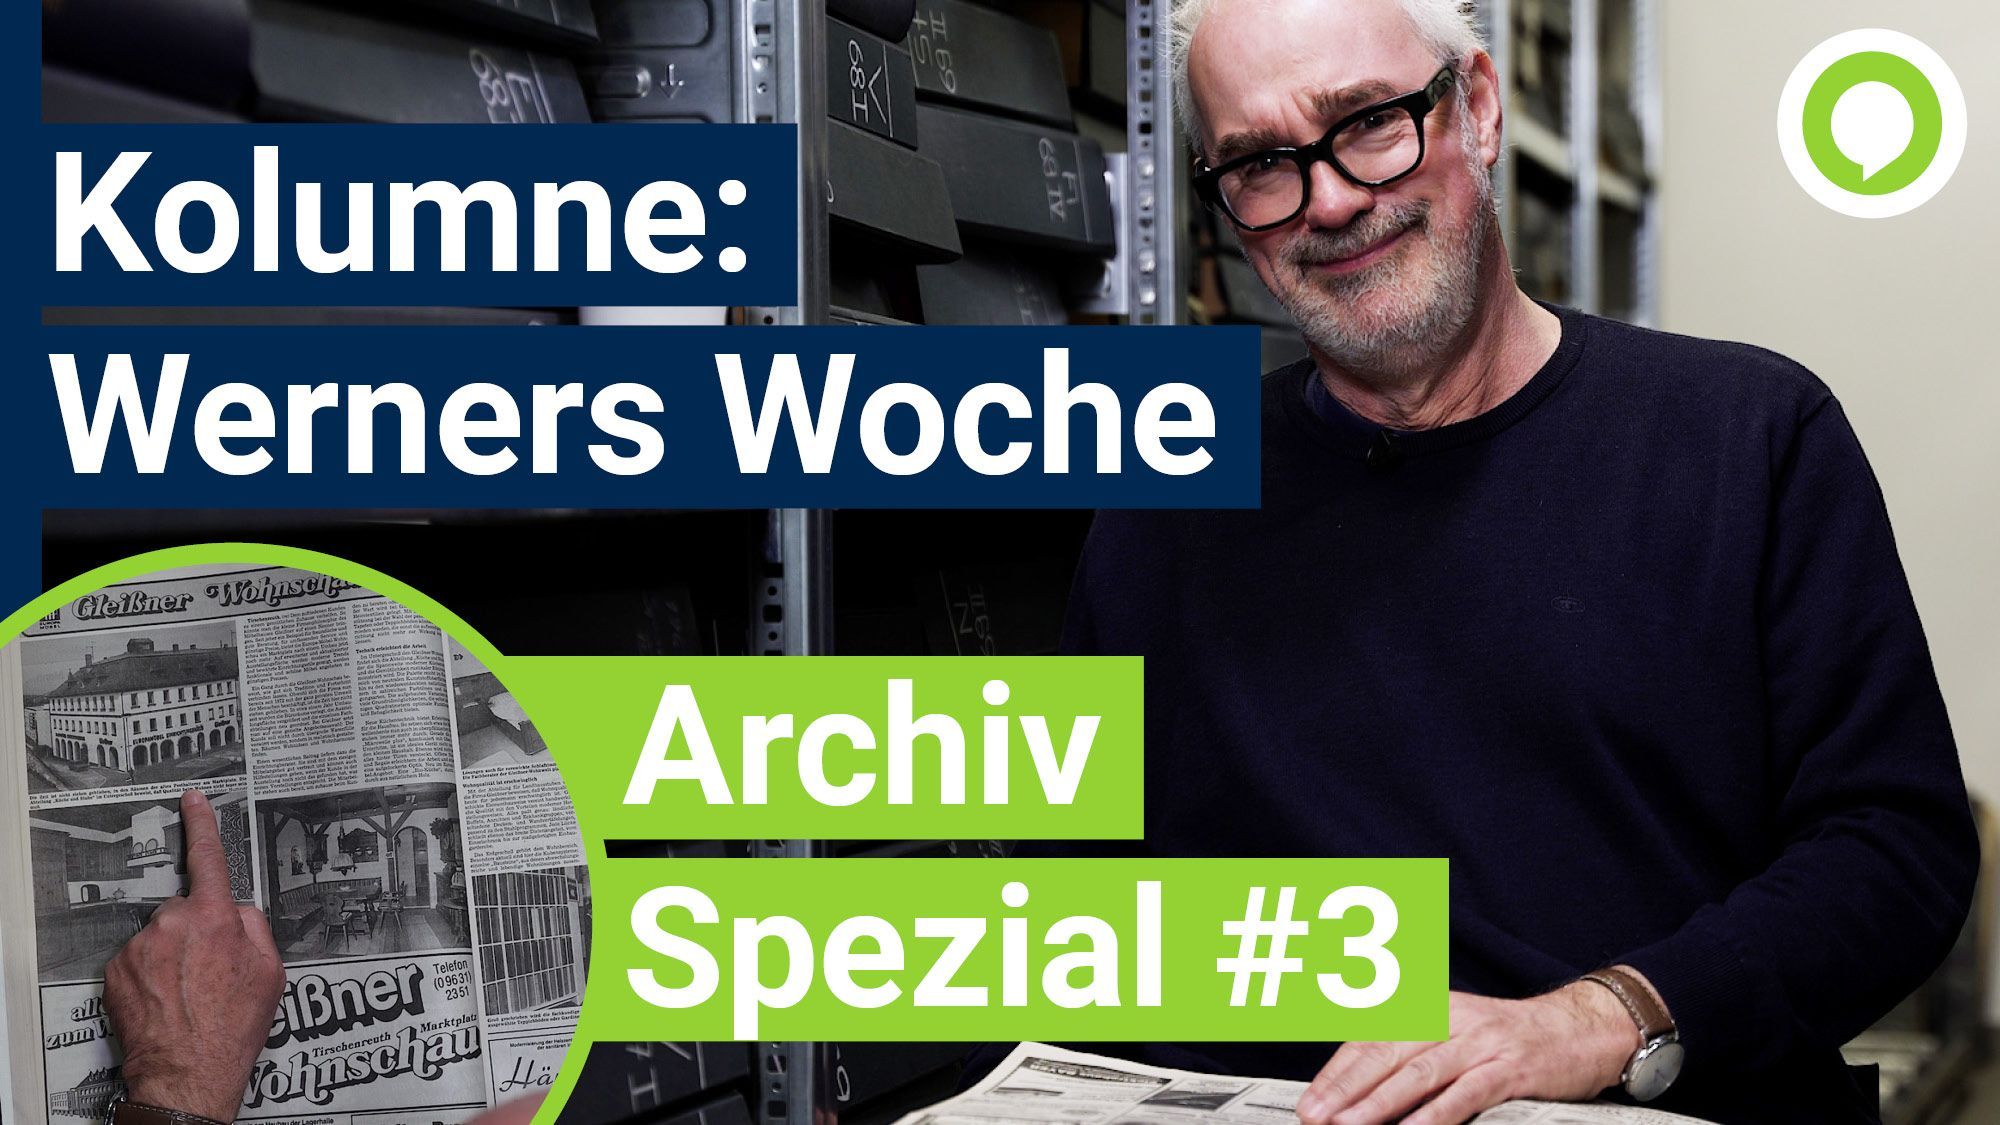 Werners Woche: Vom Humphrey's bis Möbel Gleißner – Archiv spezial mit einem Blick ins Jahr 1985